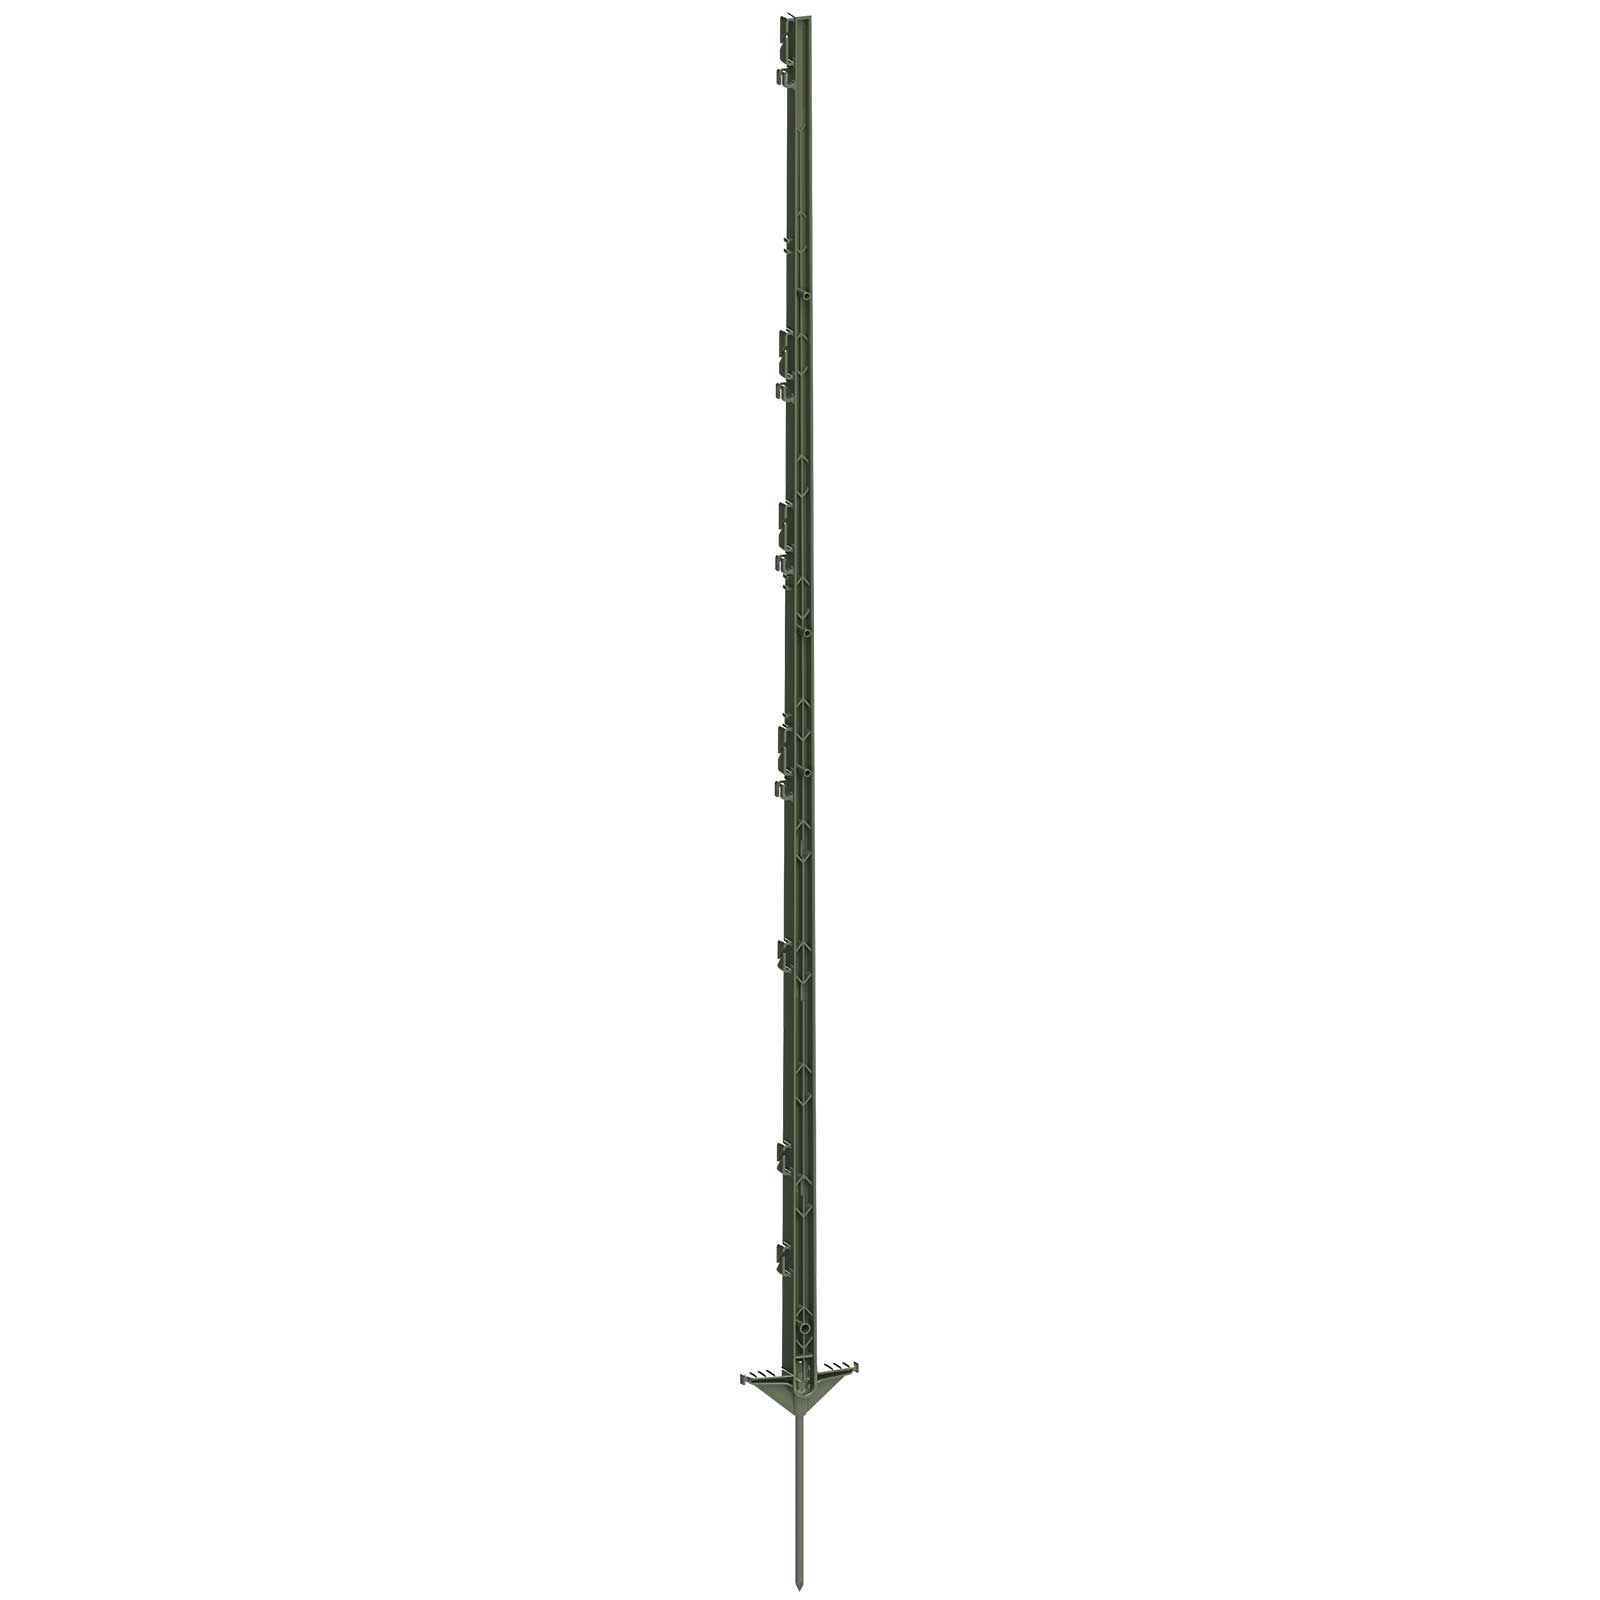 Kunststoffpfahl Expert 156 cm, Doppeltritt, grün (5er Pack)